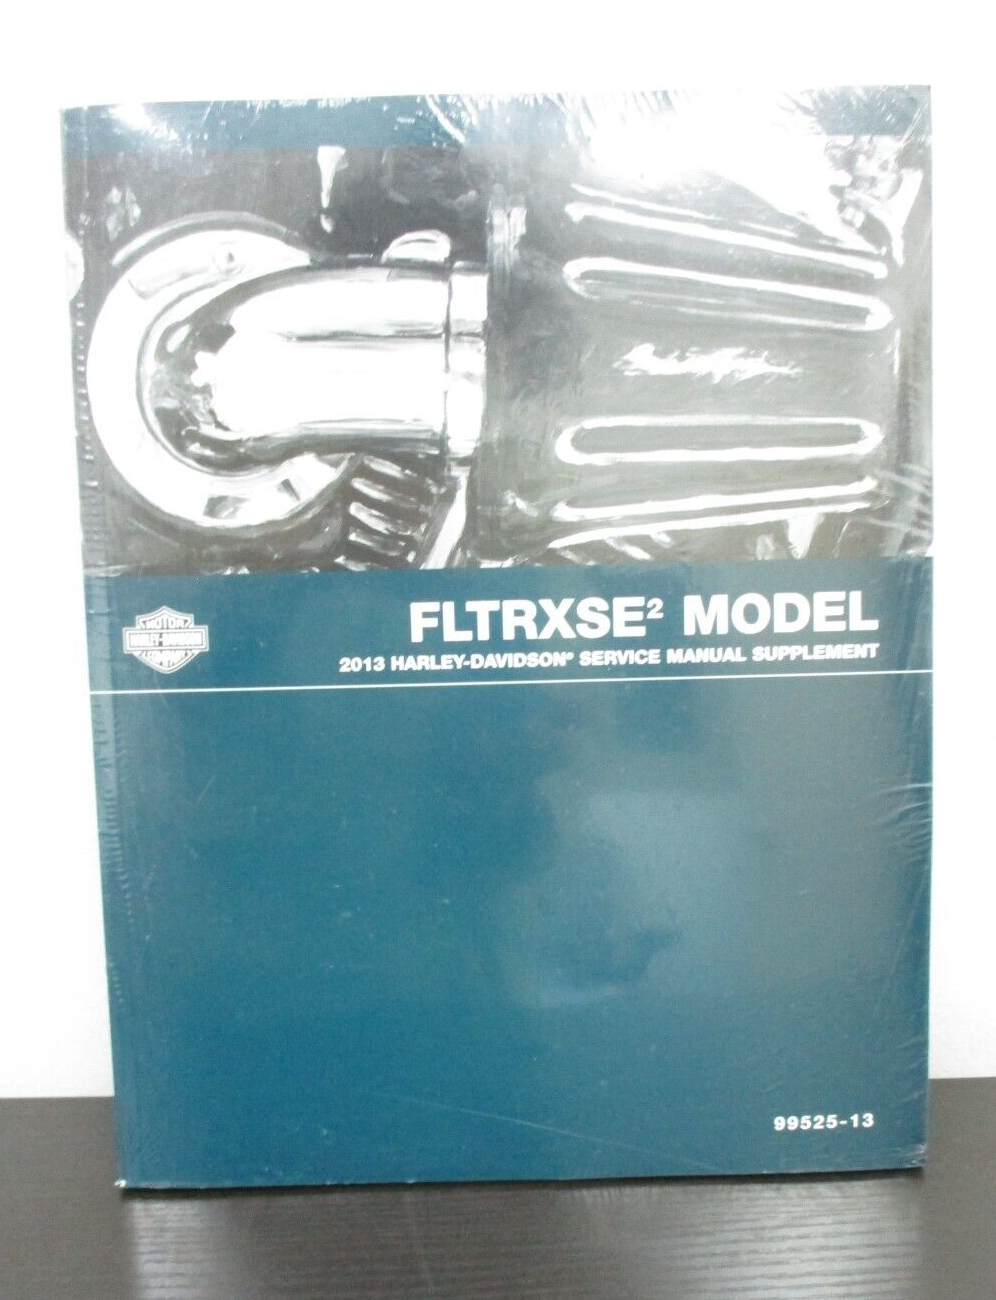 Harley-Davidson 2013 FLTRXSE2 Model Service Manual Supplement 99525-13